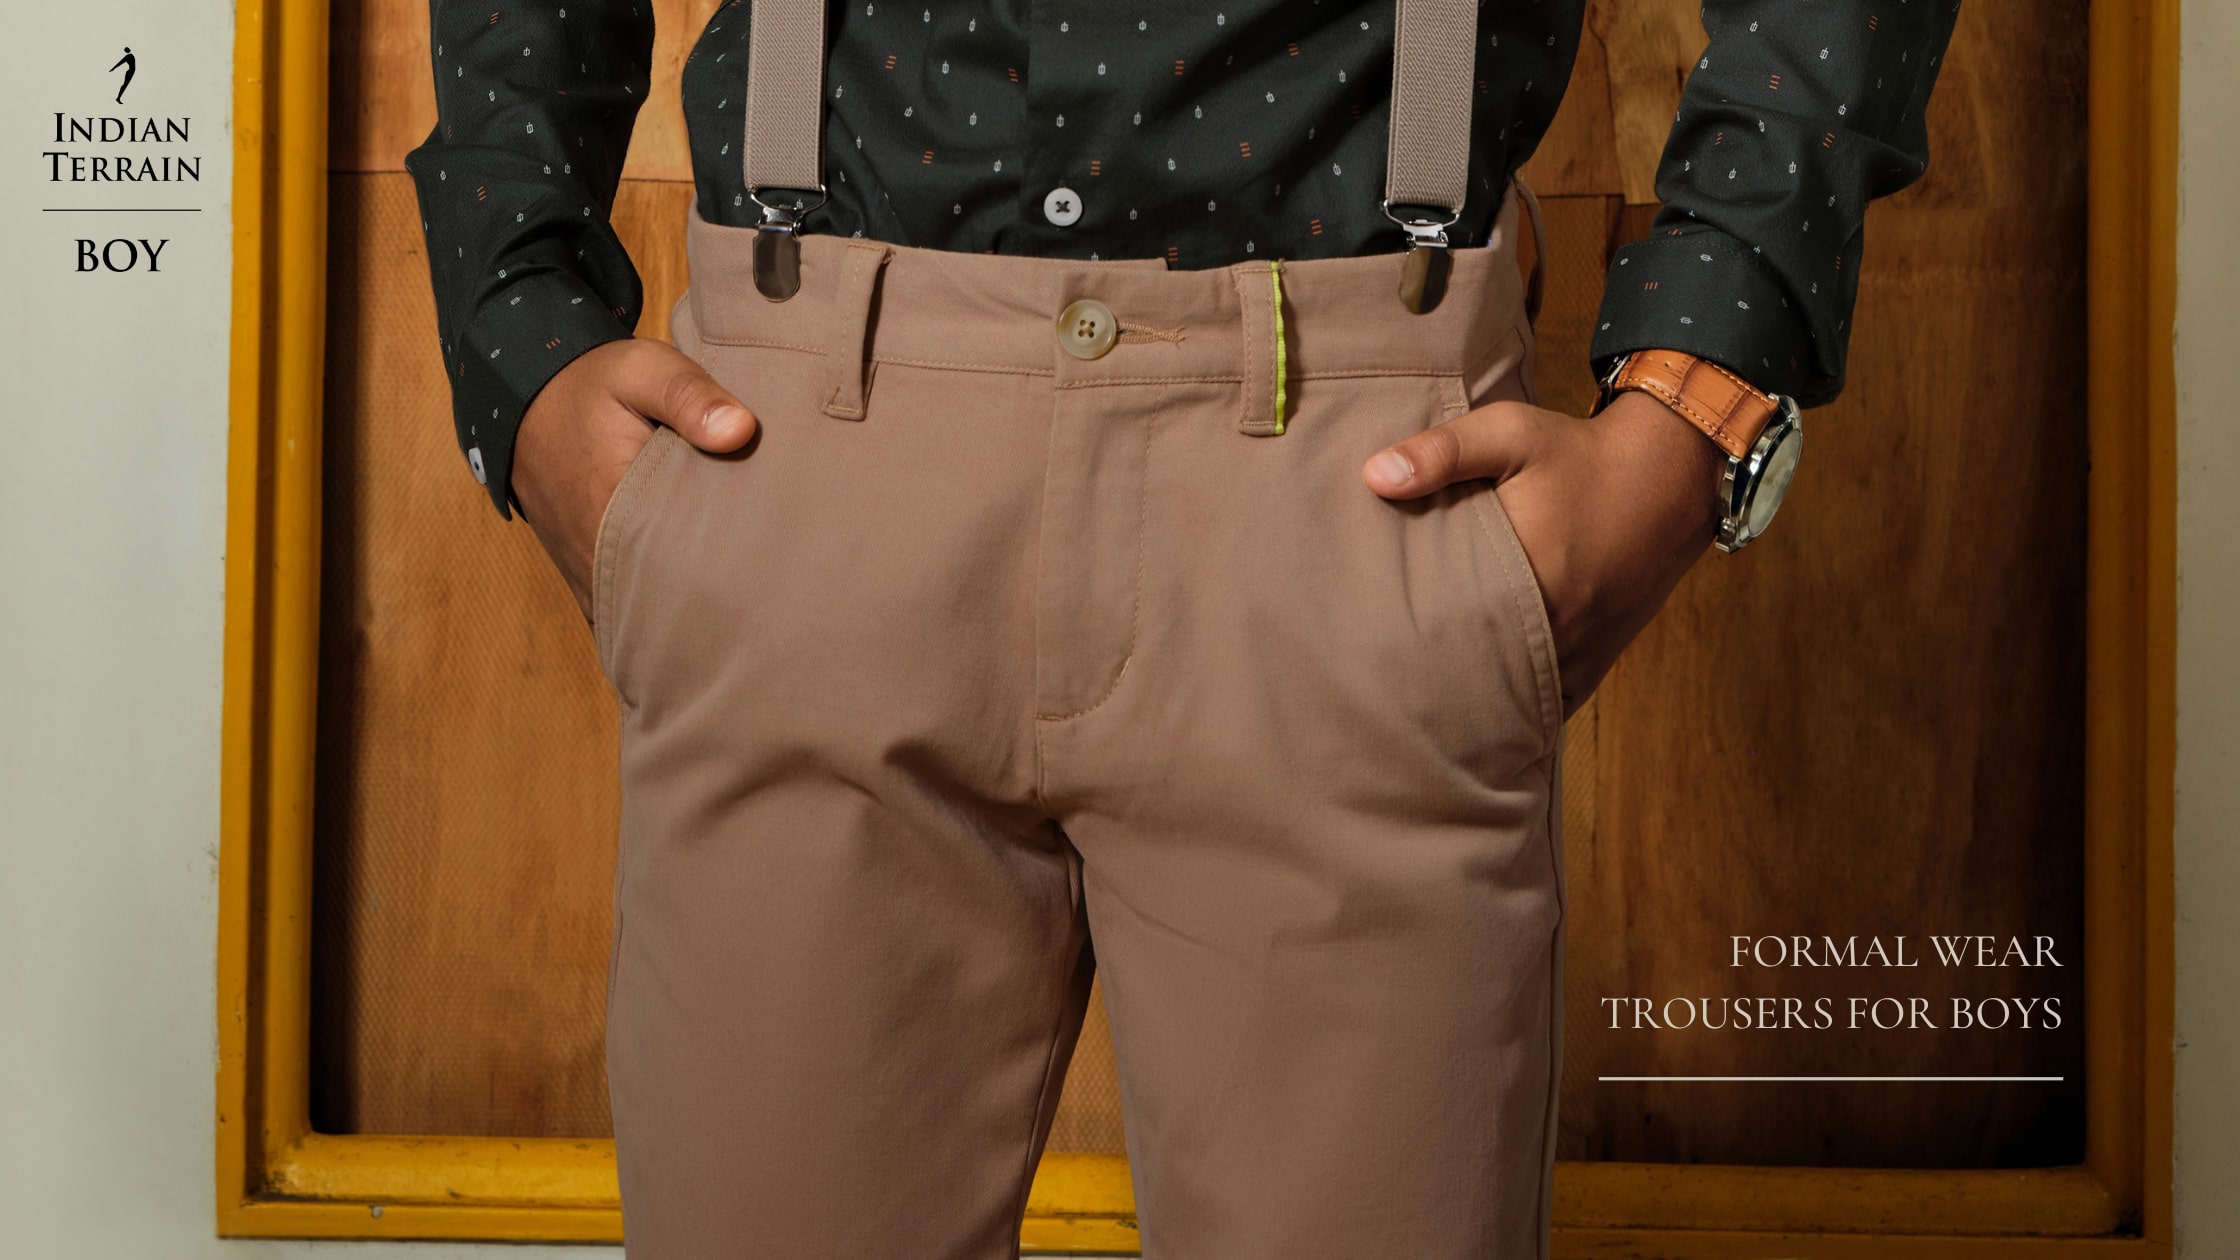 Modern Formal Wear Trousers for Boys